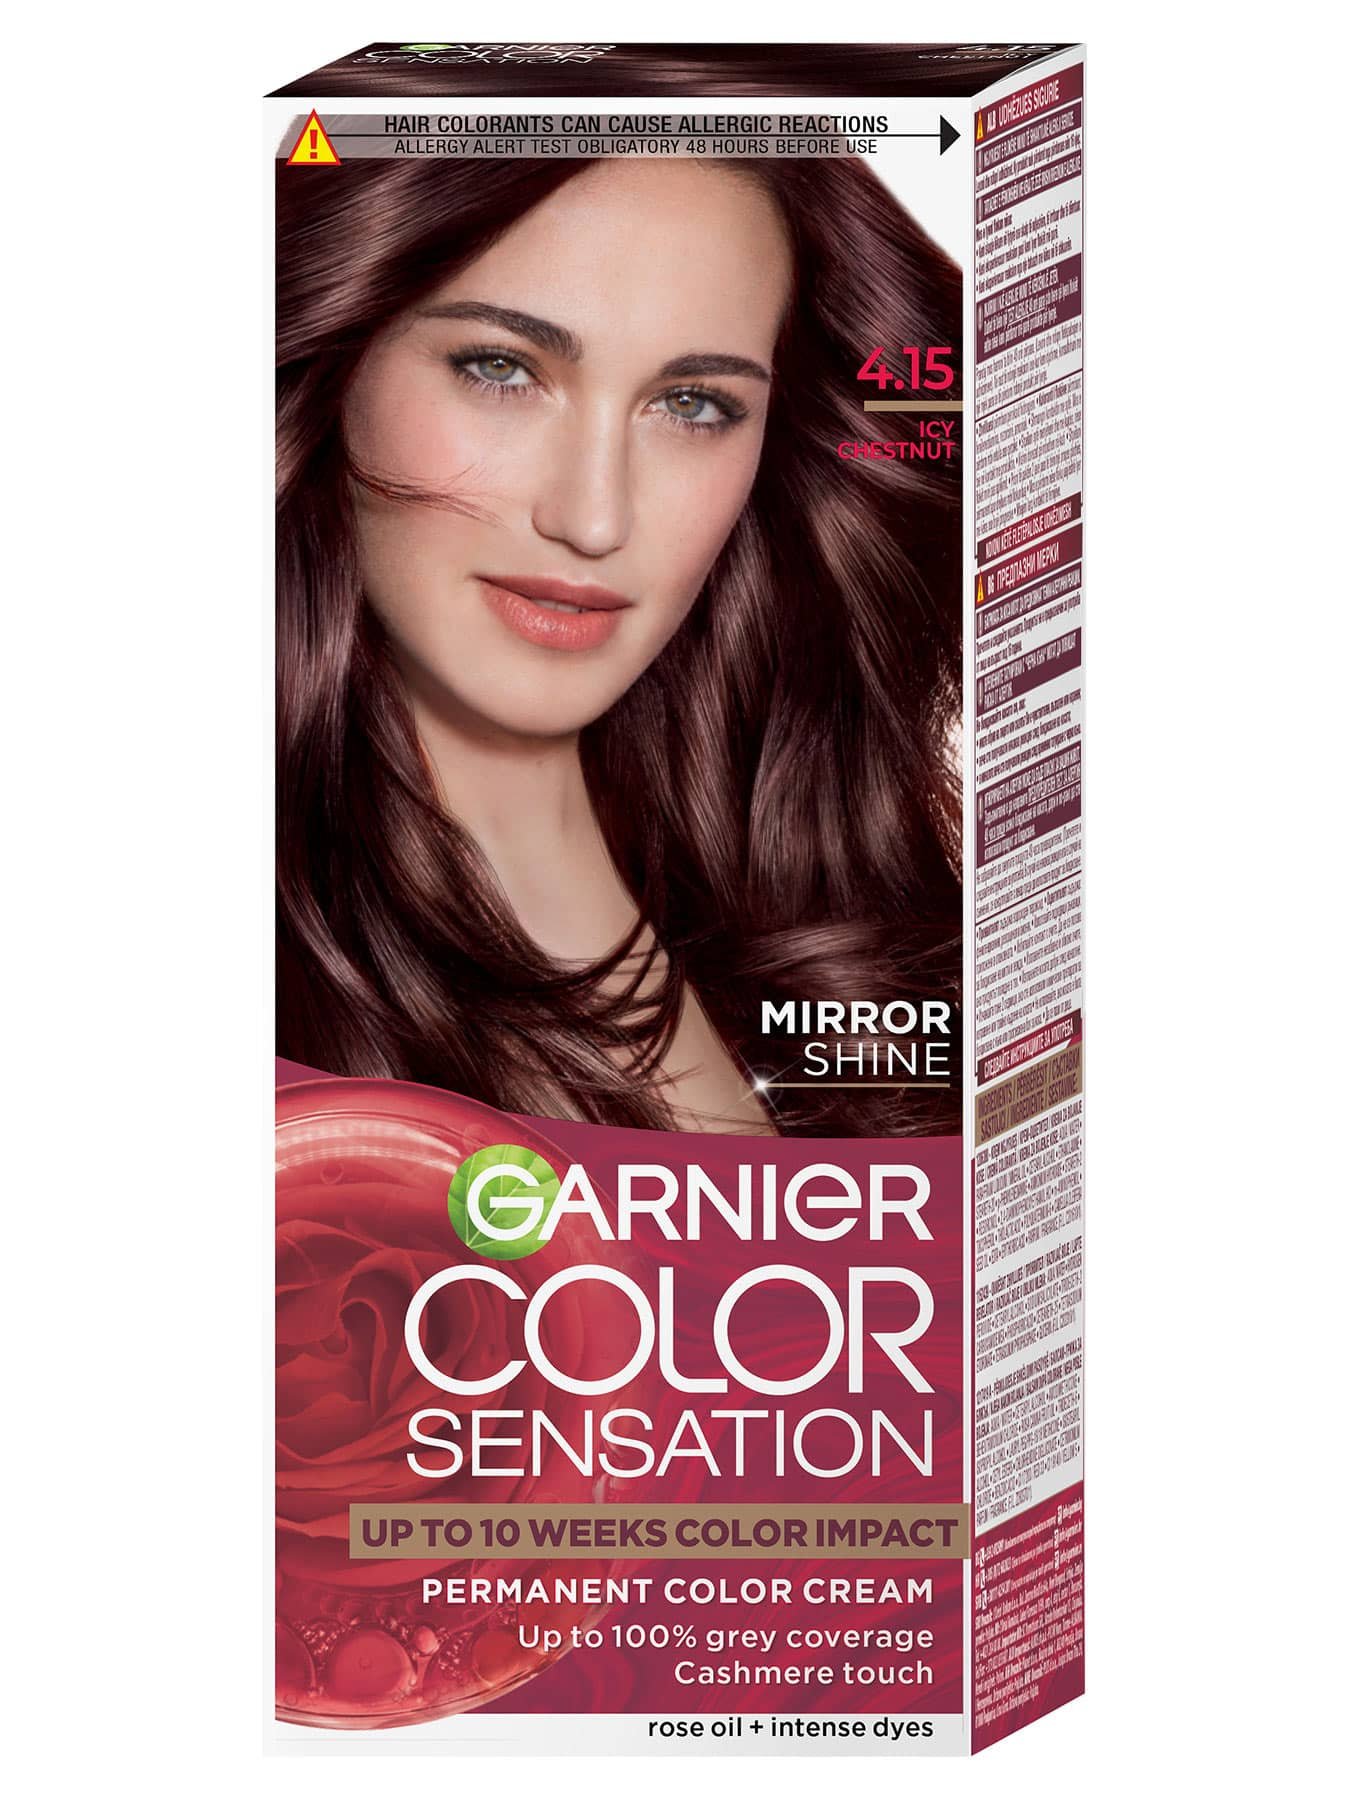 Garnier Color Sensation 4.15